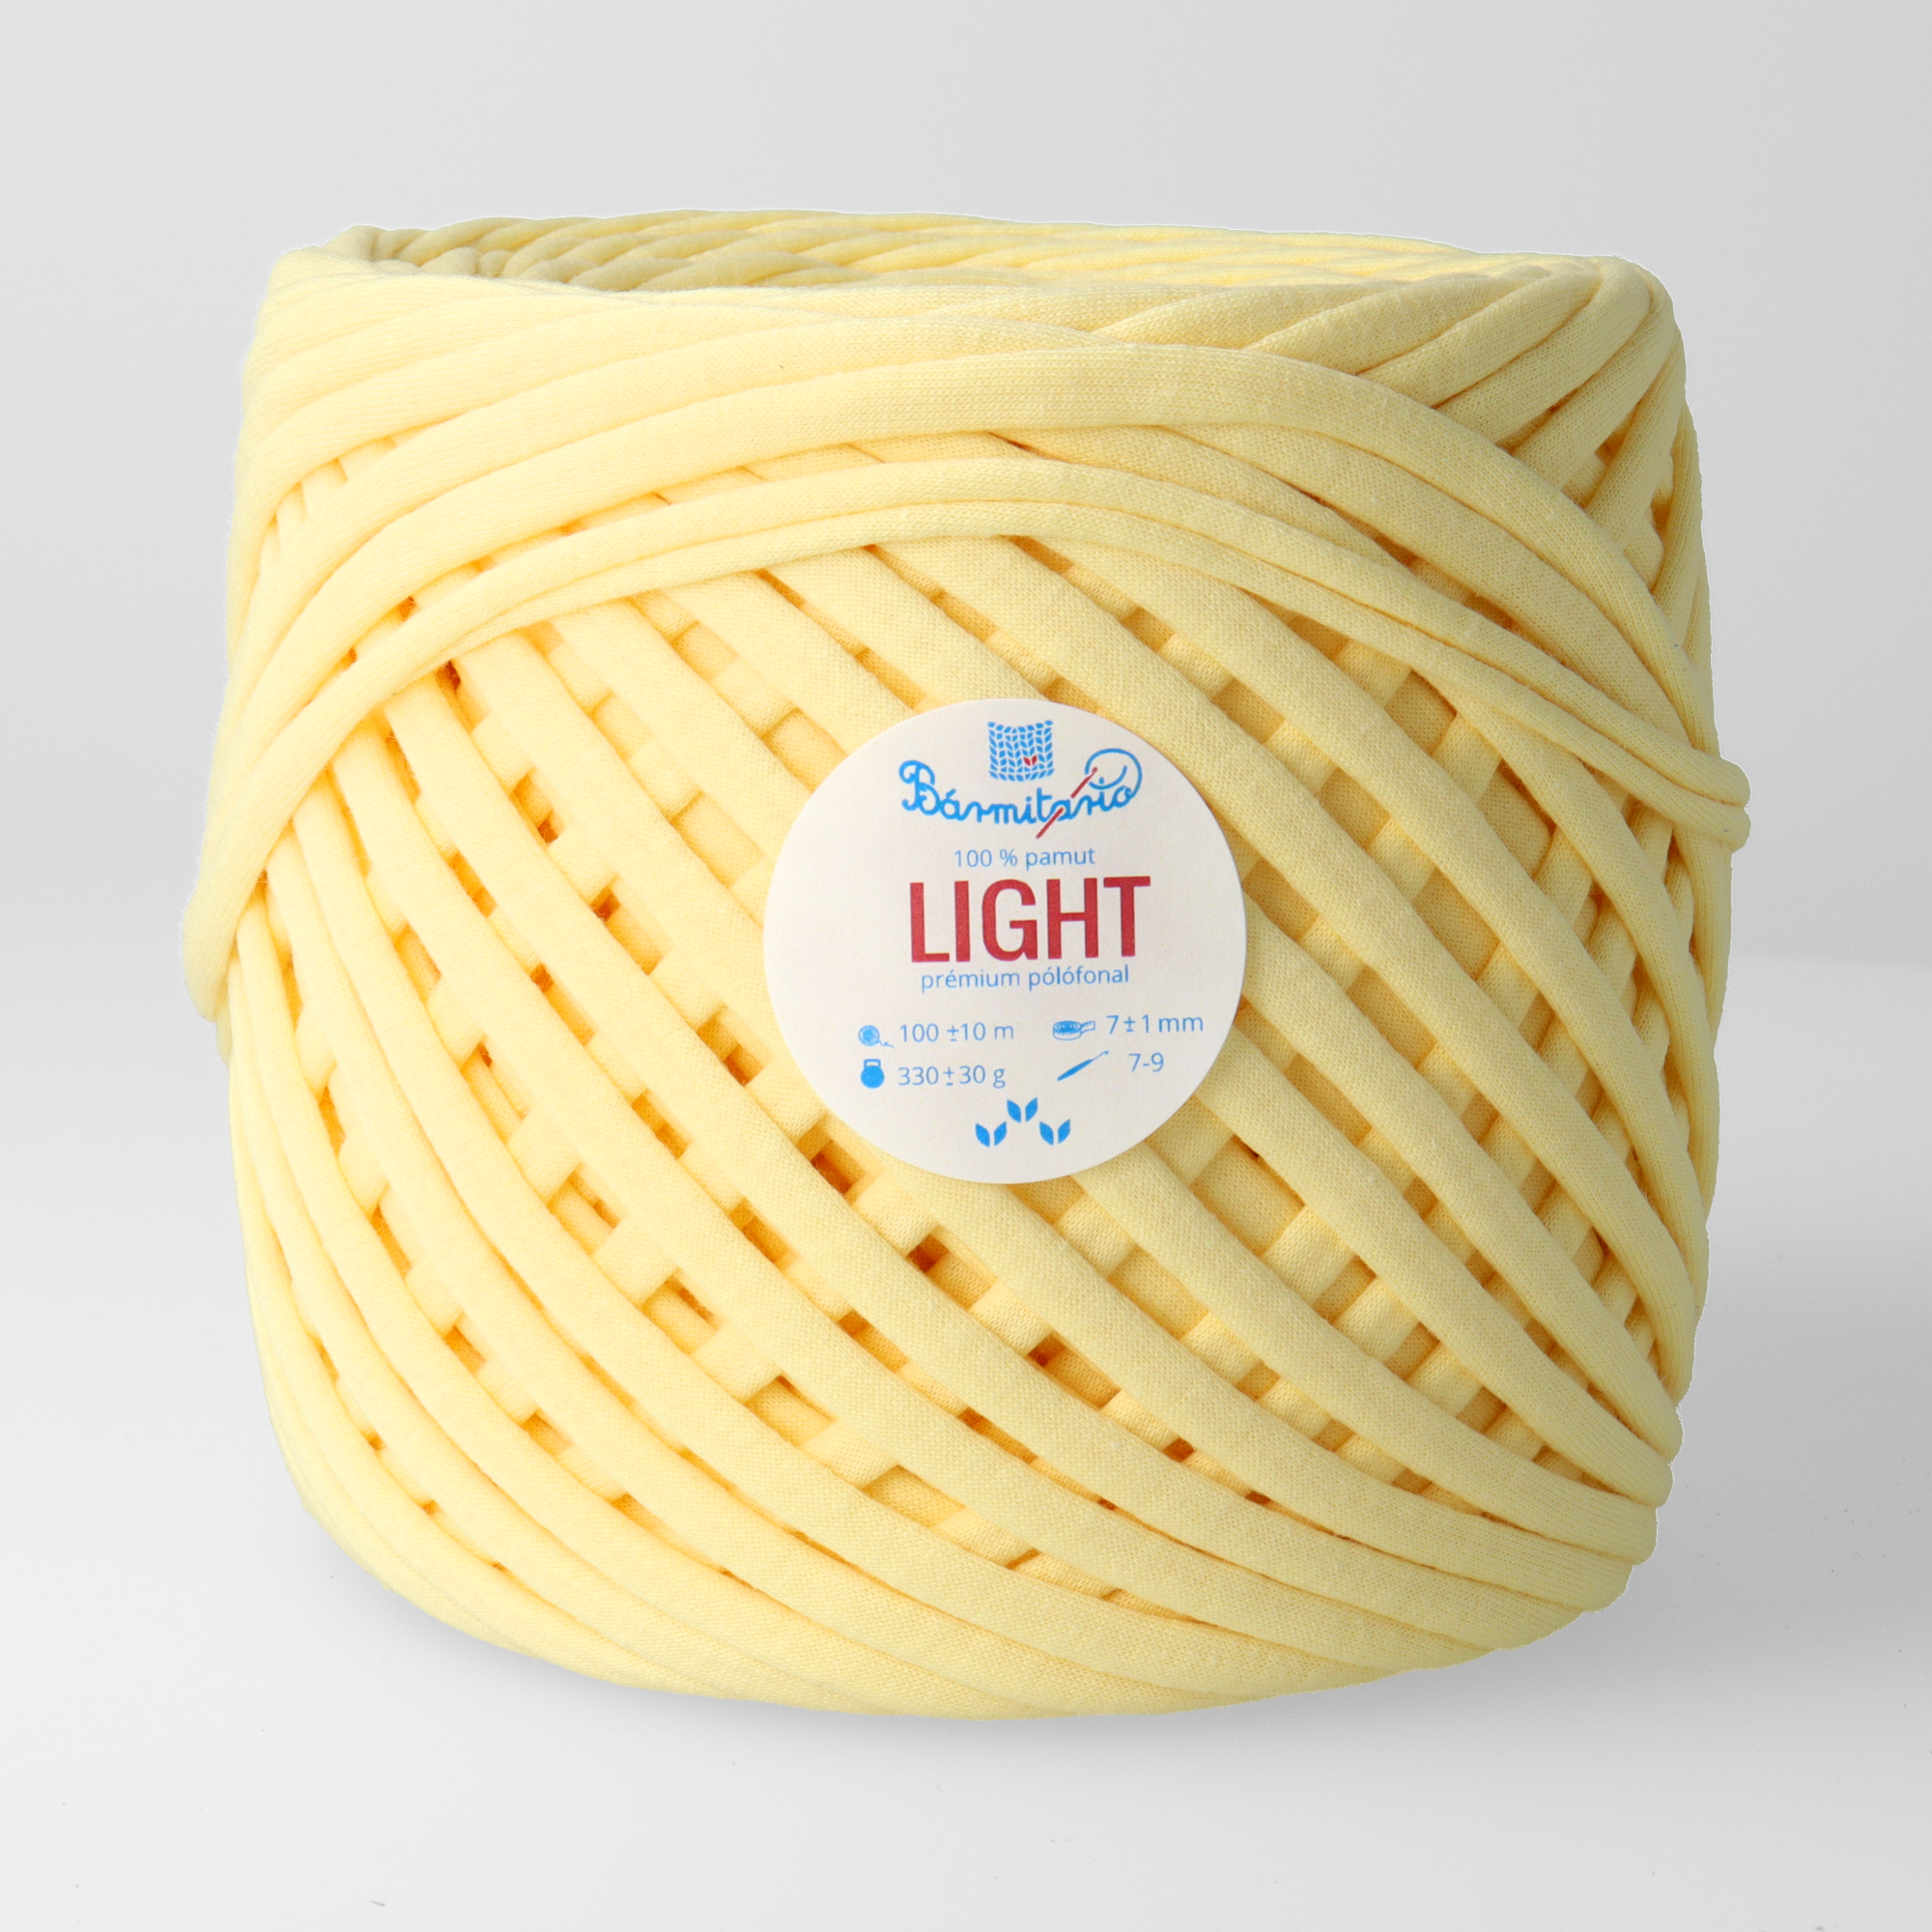 Bármitartó LIGHT prémium pólófonal - Limonádé